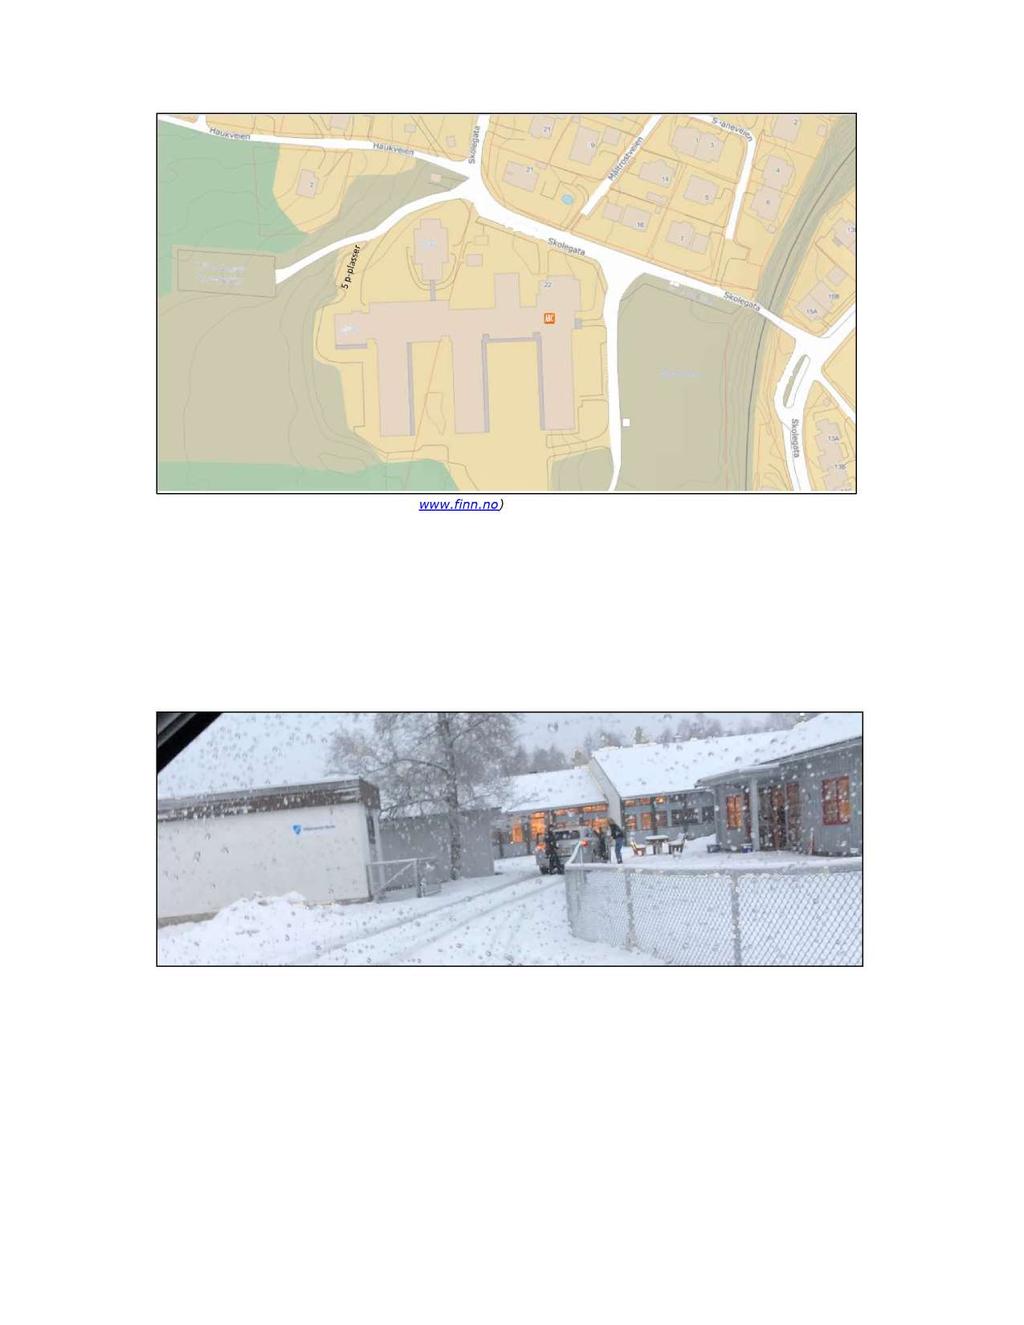 Oversikt over Vikersund skole (kartkilde: www.finn.no). Ved skolen er det ca. 60 p-plasser.